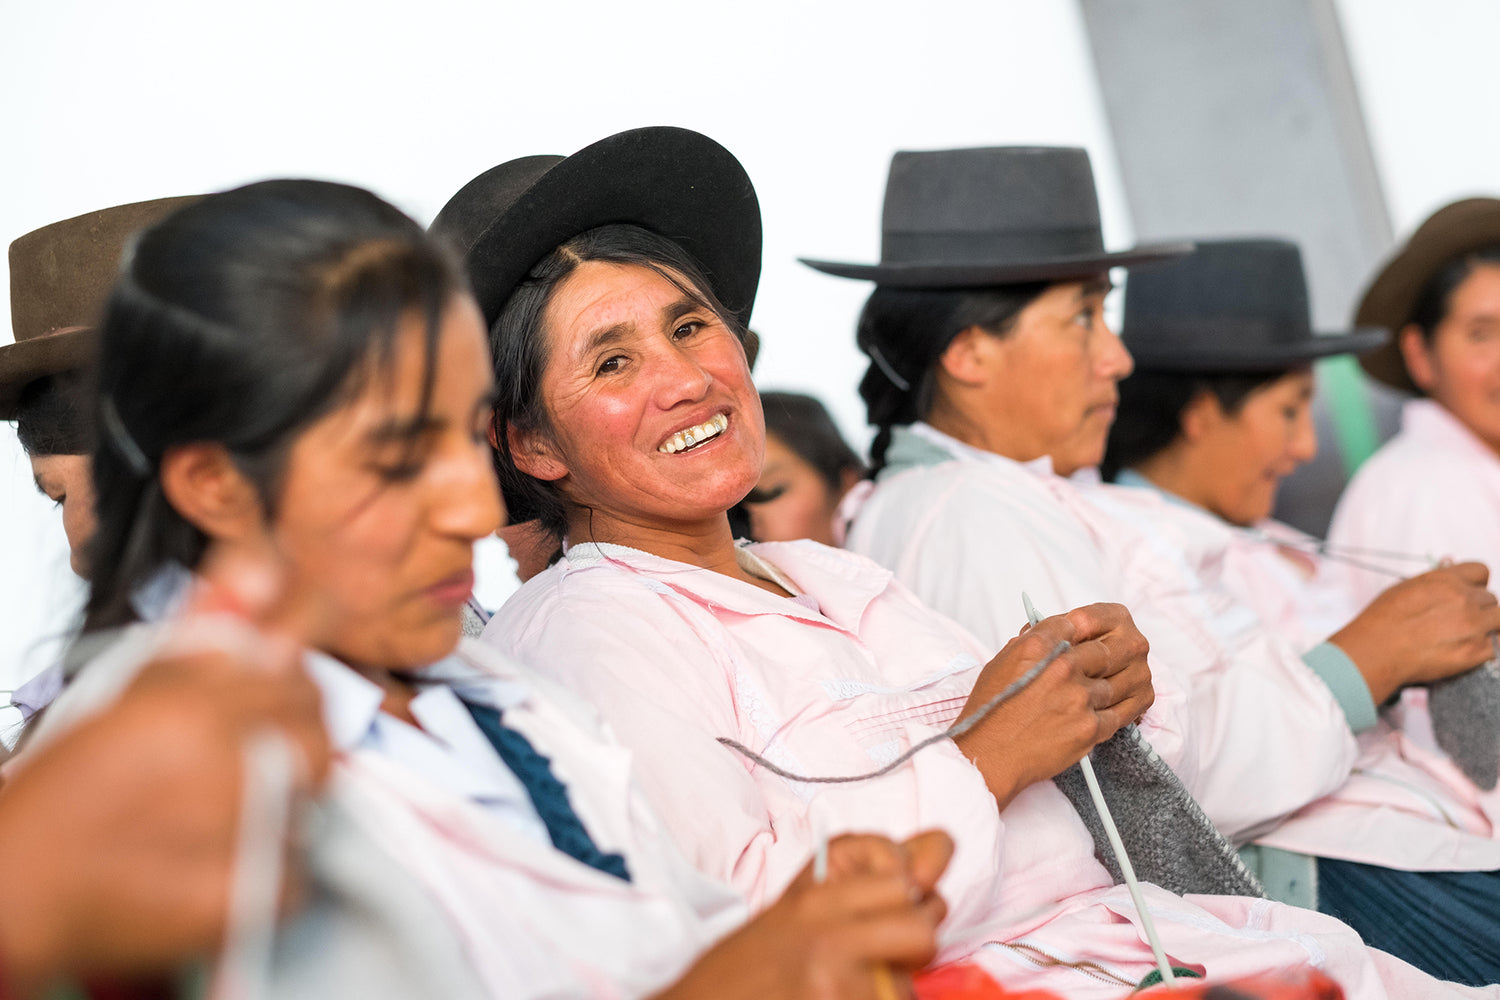 Peruvian woman smiling as she knits